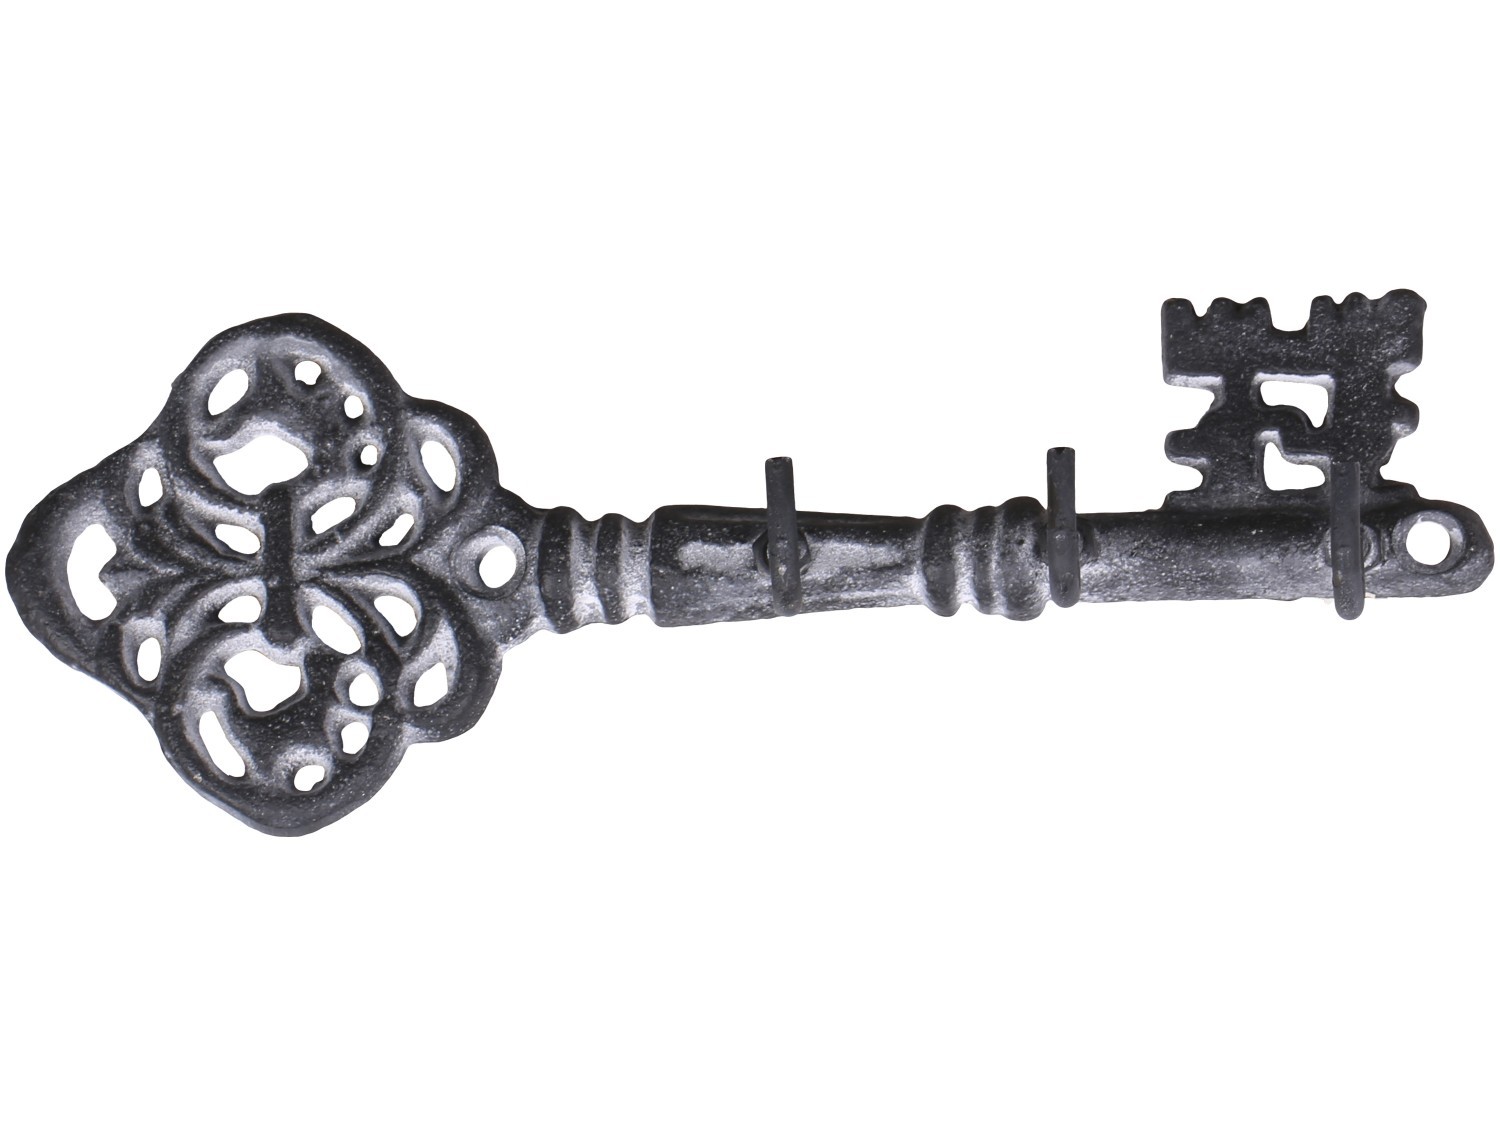 Šedý antik nástěnný věšák ve tvaru klíče se 3-mi háčky - 19*4*6,5 cm Chic Antique